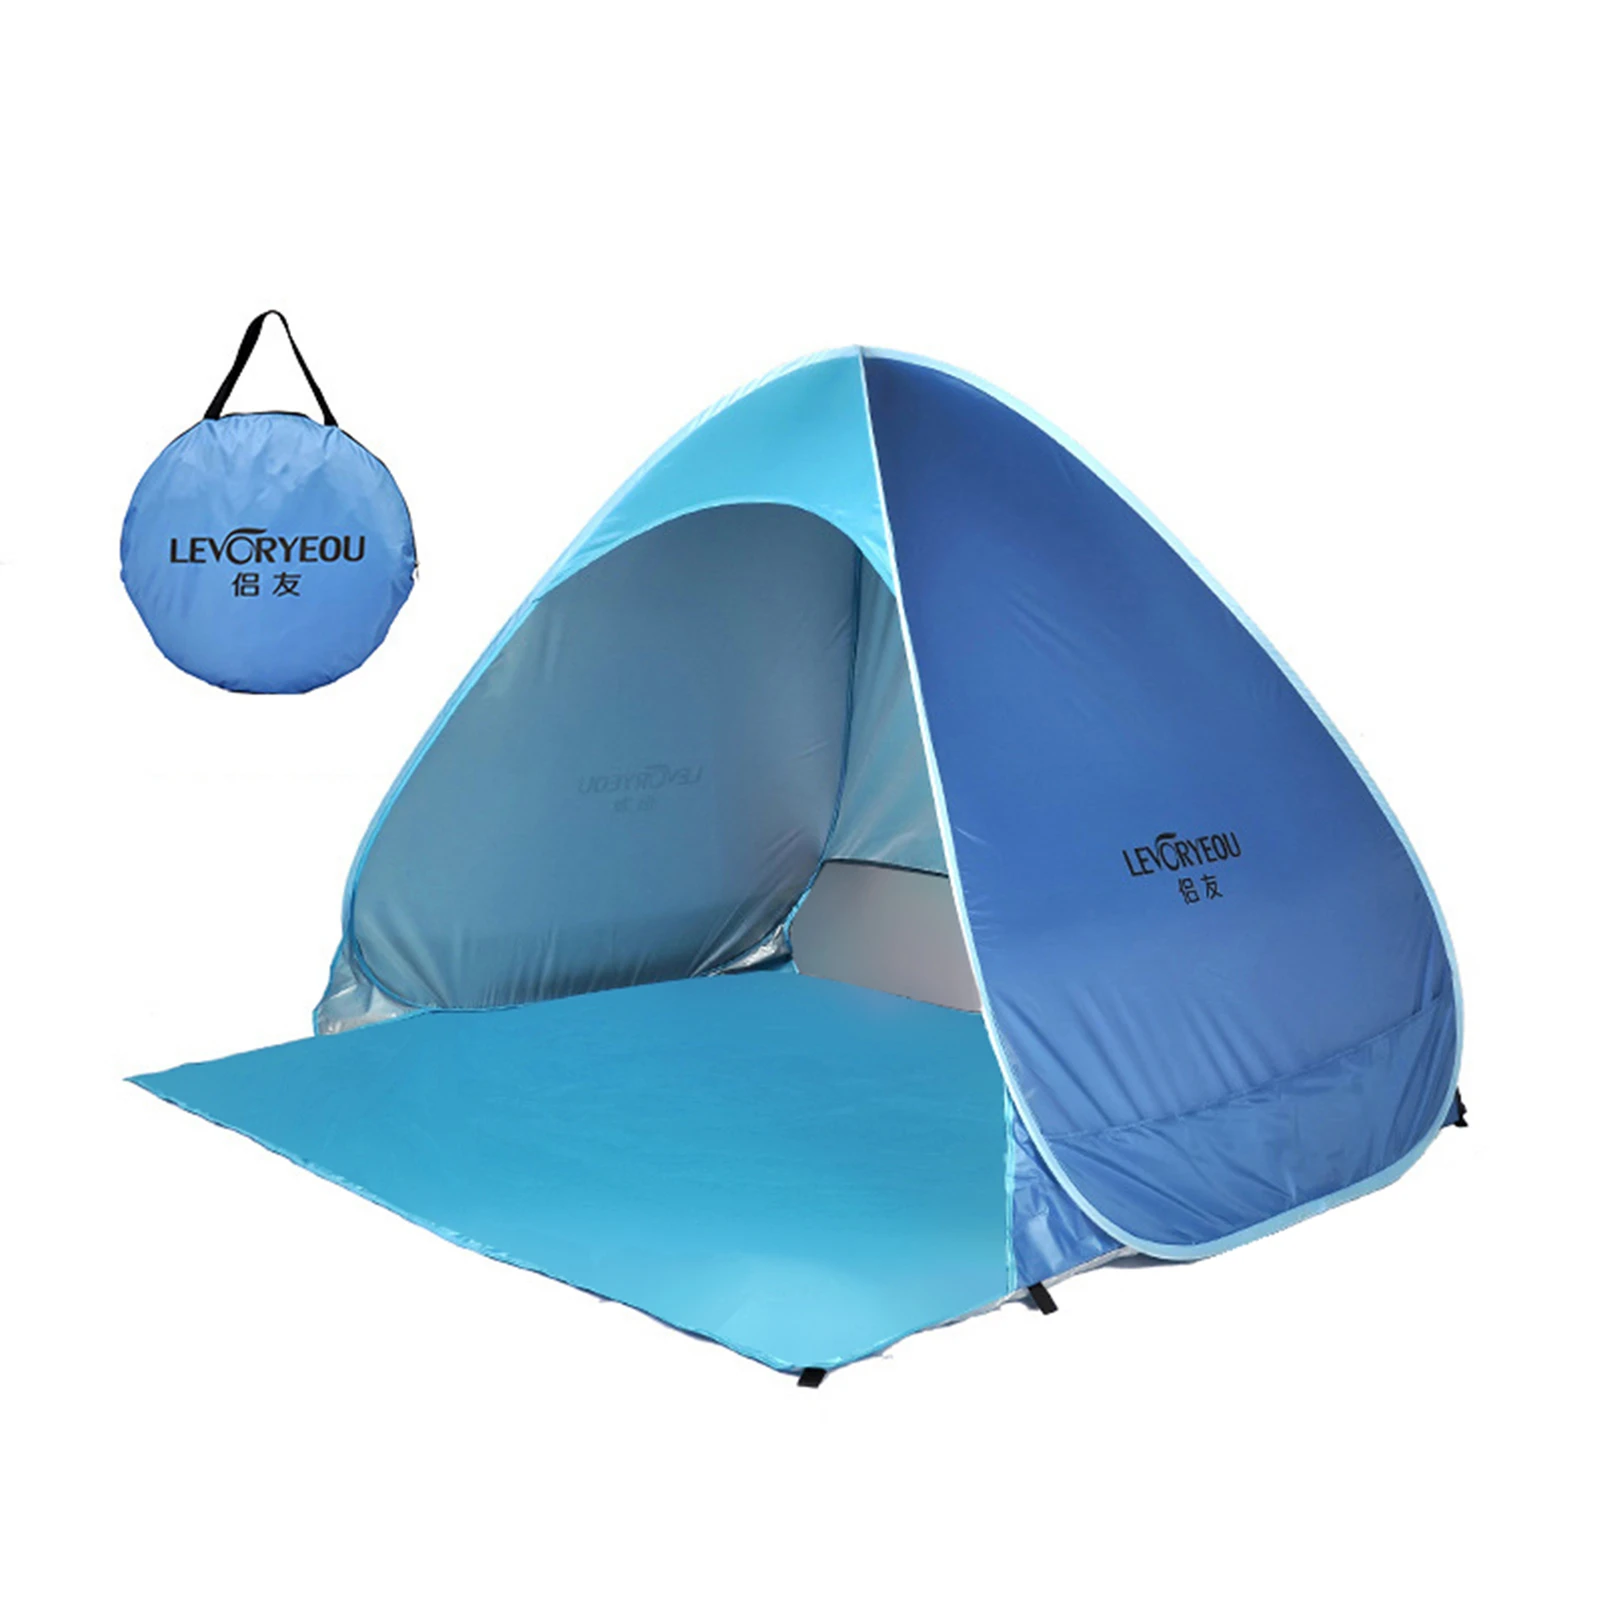 G Boven hoofd en schouder geboorte Russian Stock 2 4 Person Outdoor Camping Tents 4 Season Pop up Tent  Portable Handbag Single Layer Waterproof Hiking Tent|Tents| - AliExpress